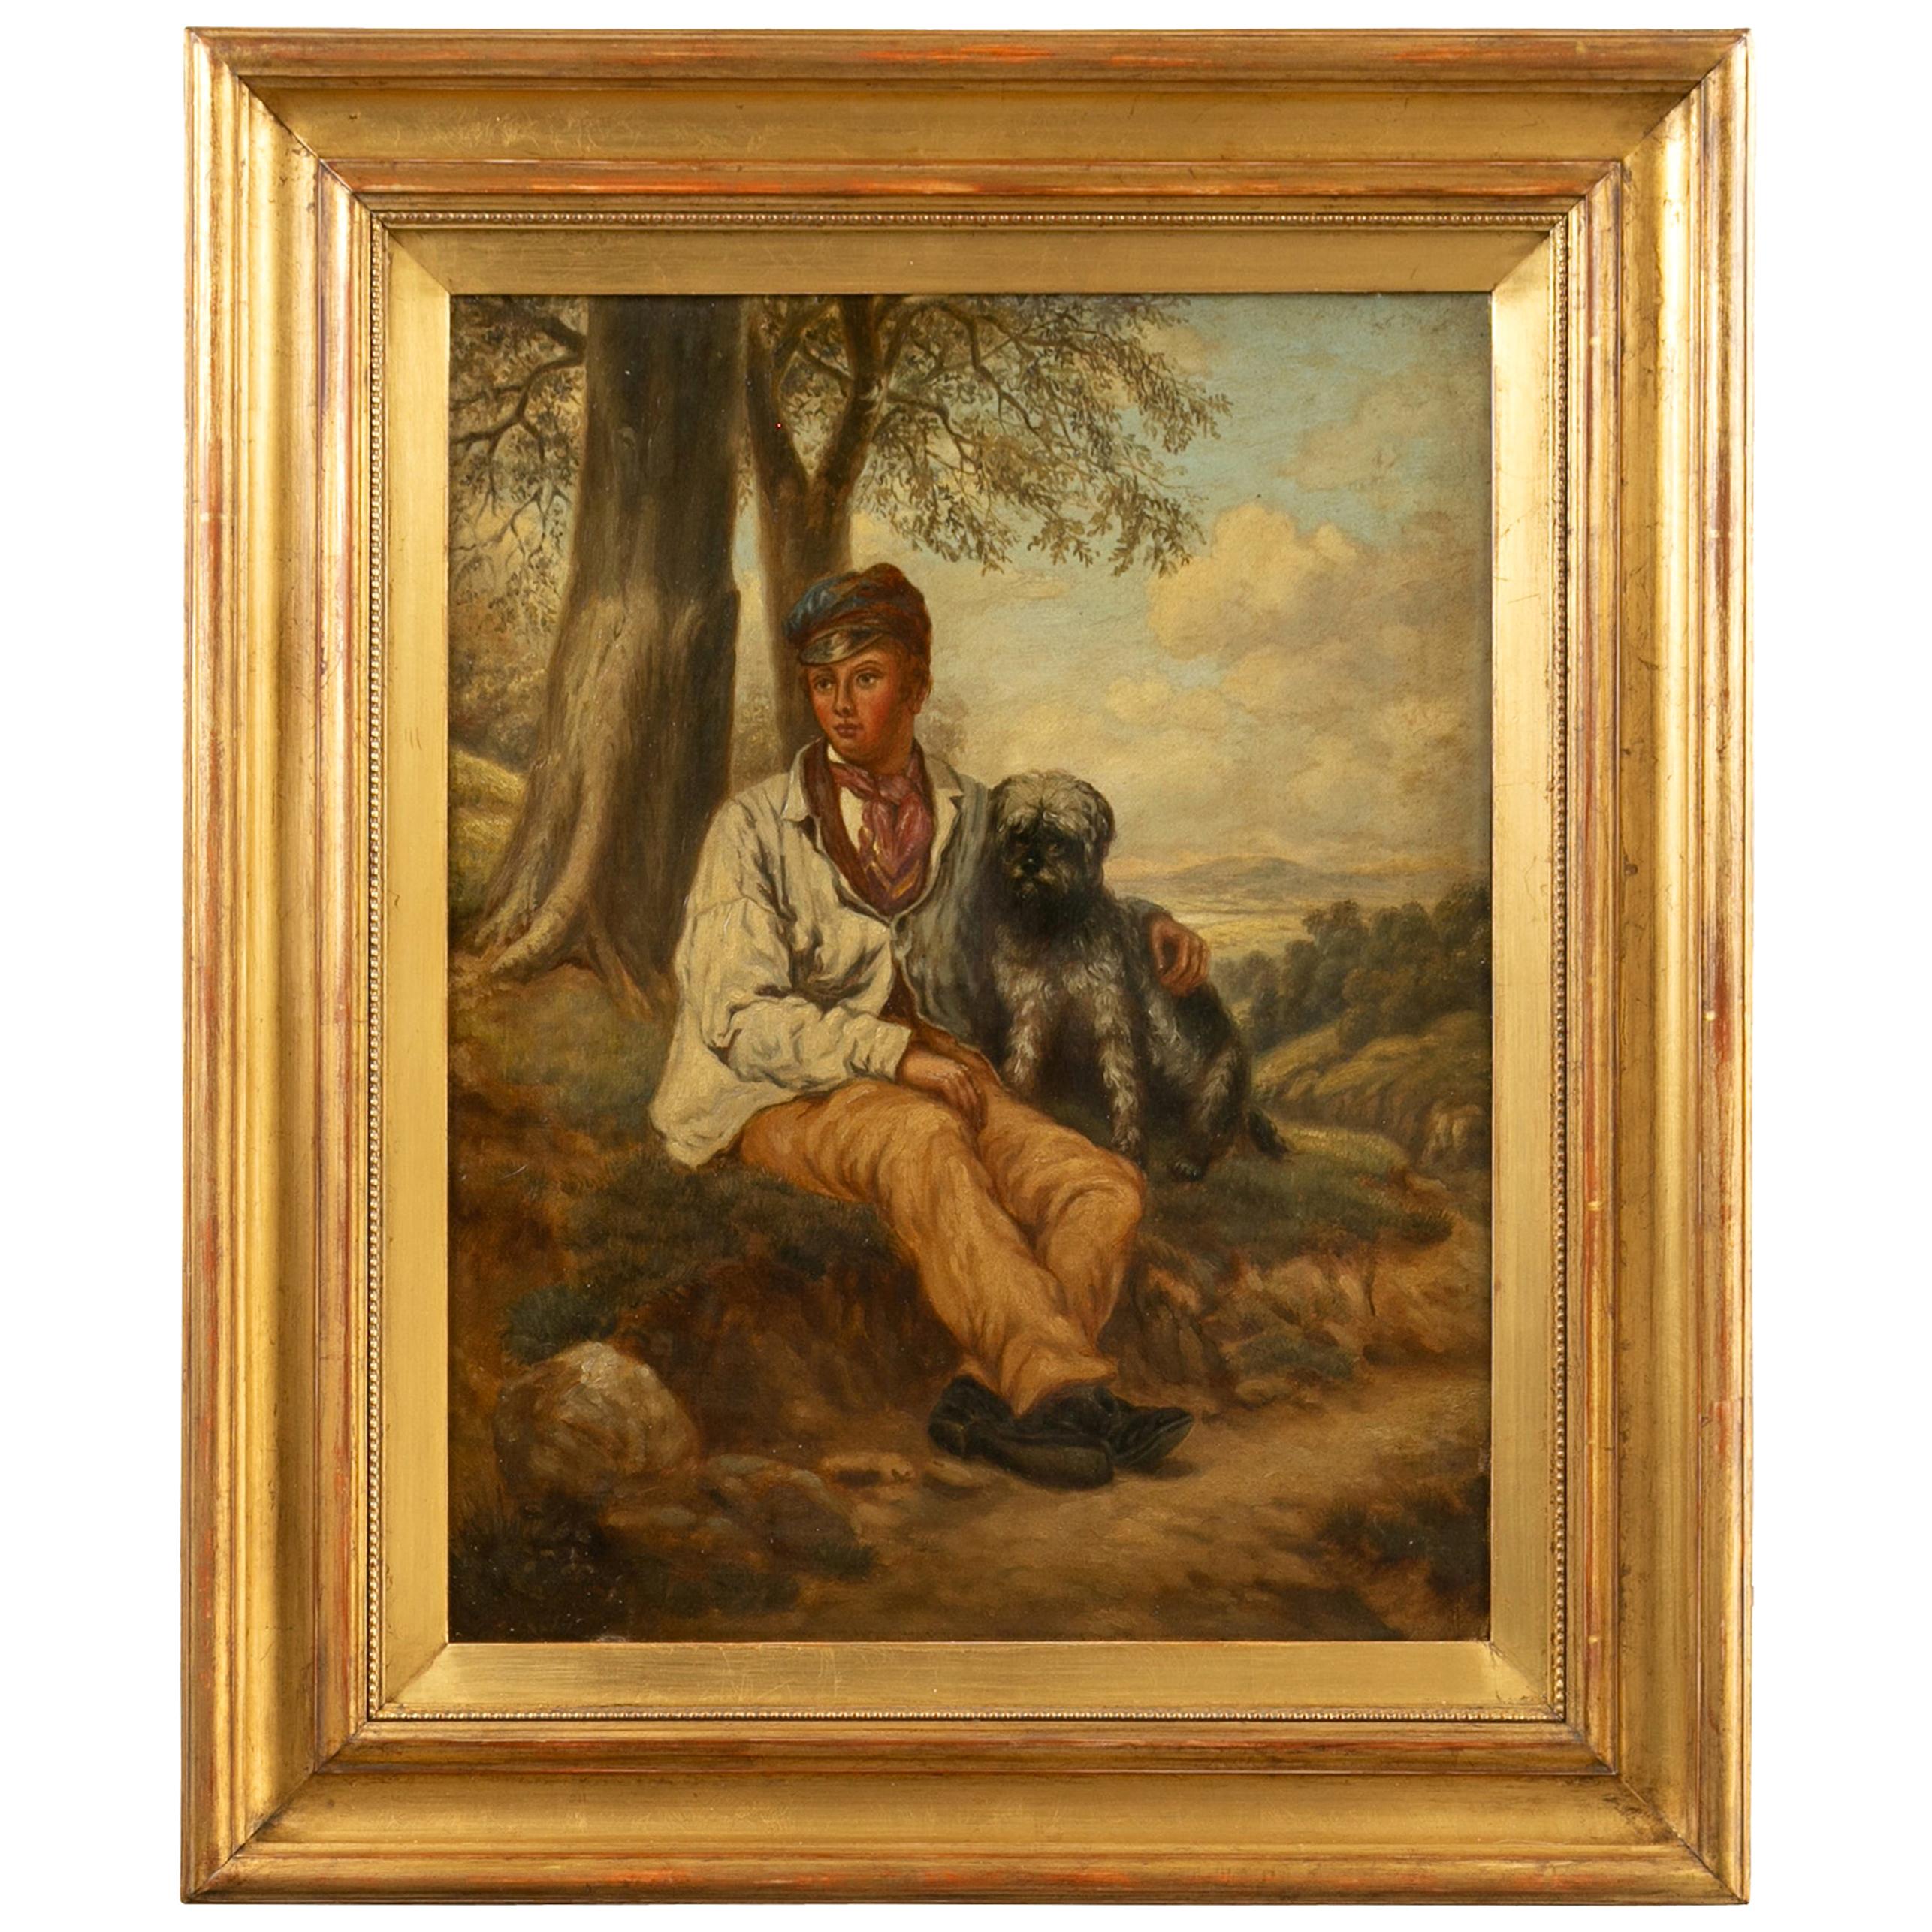 Huile sur toile anglaise des années 1880 représentant un garçon et son chien dans un cadre doré ancien